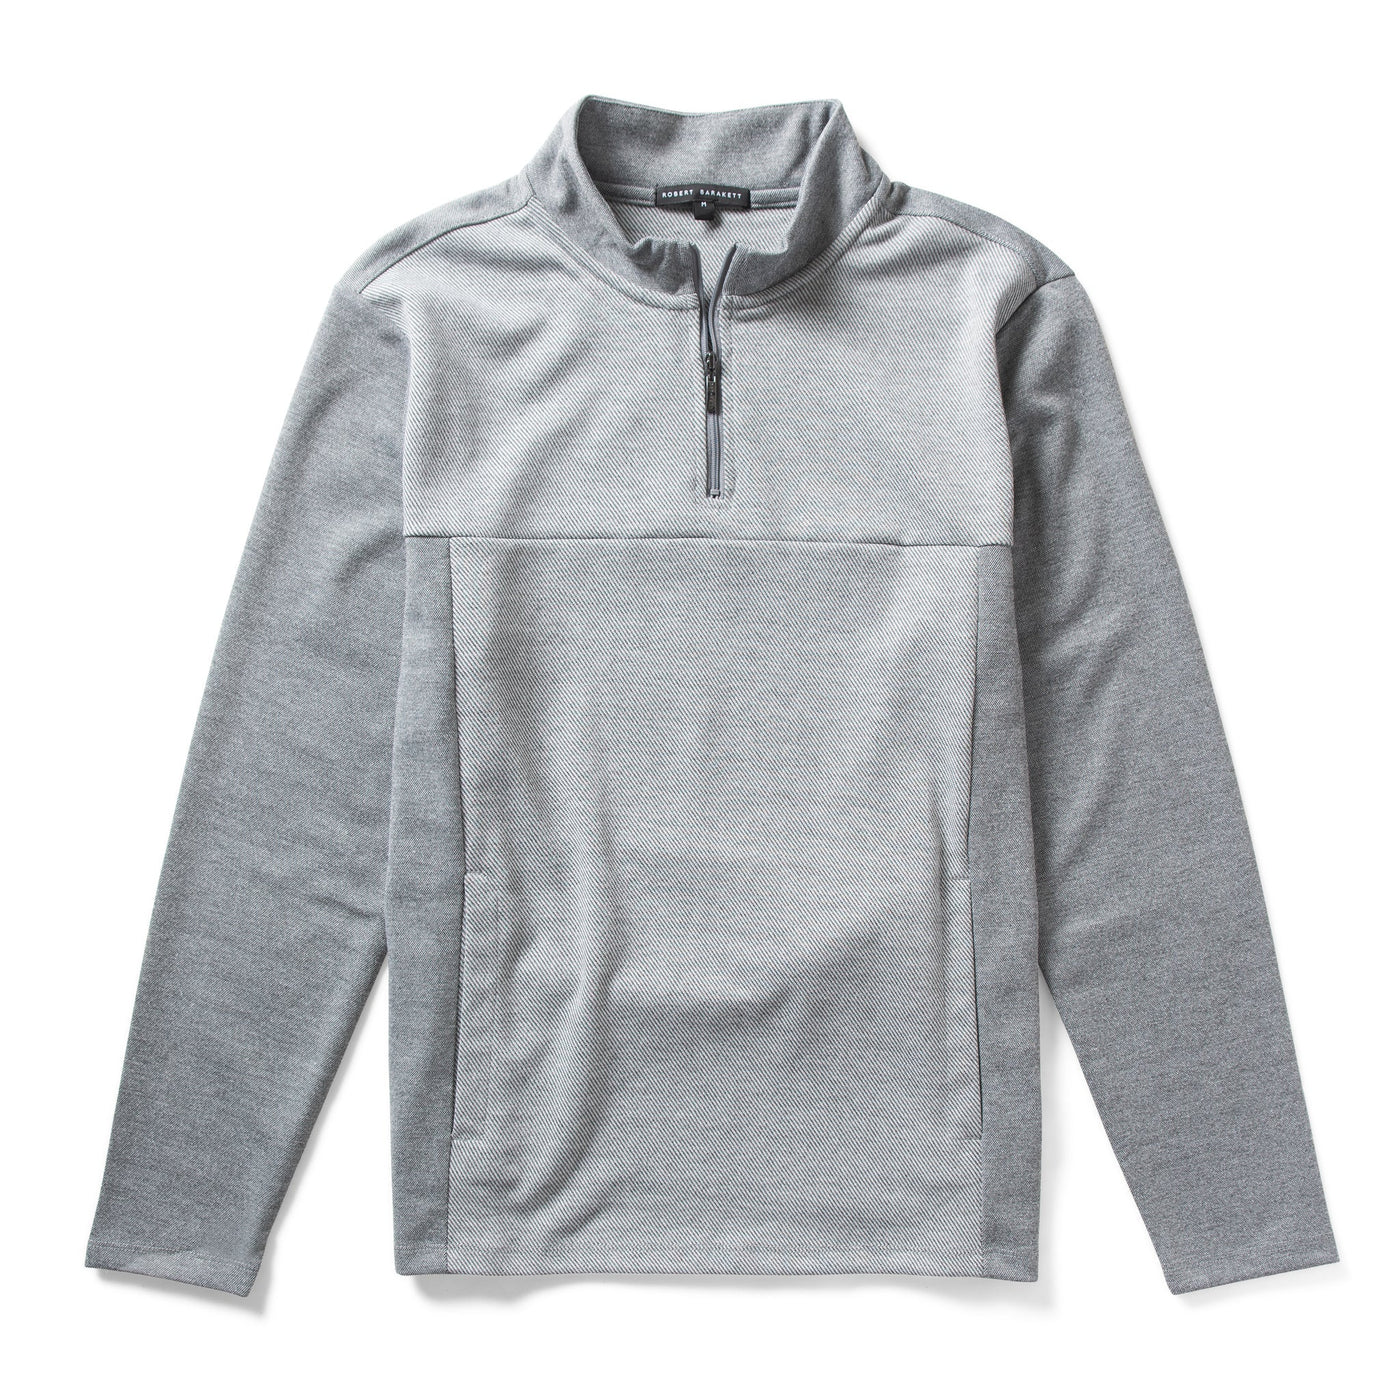 MILLIGAN HALF ZIP SWEATER-Sweater/Sweatshirt-Robert Barakett